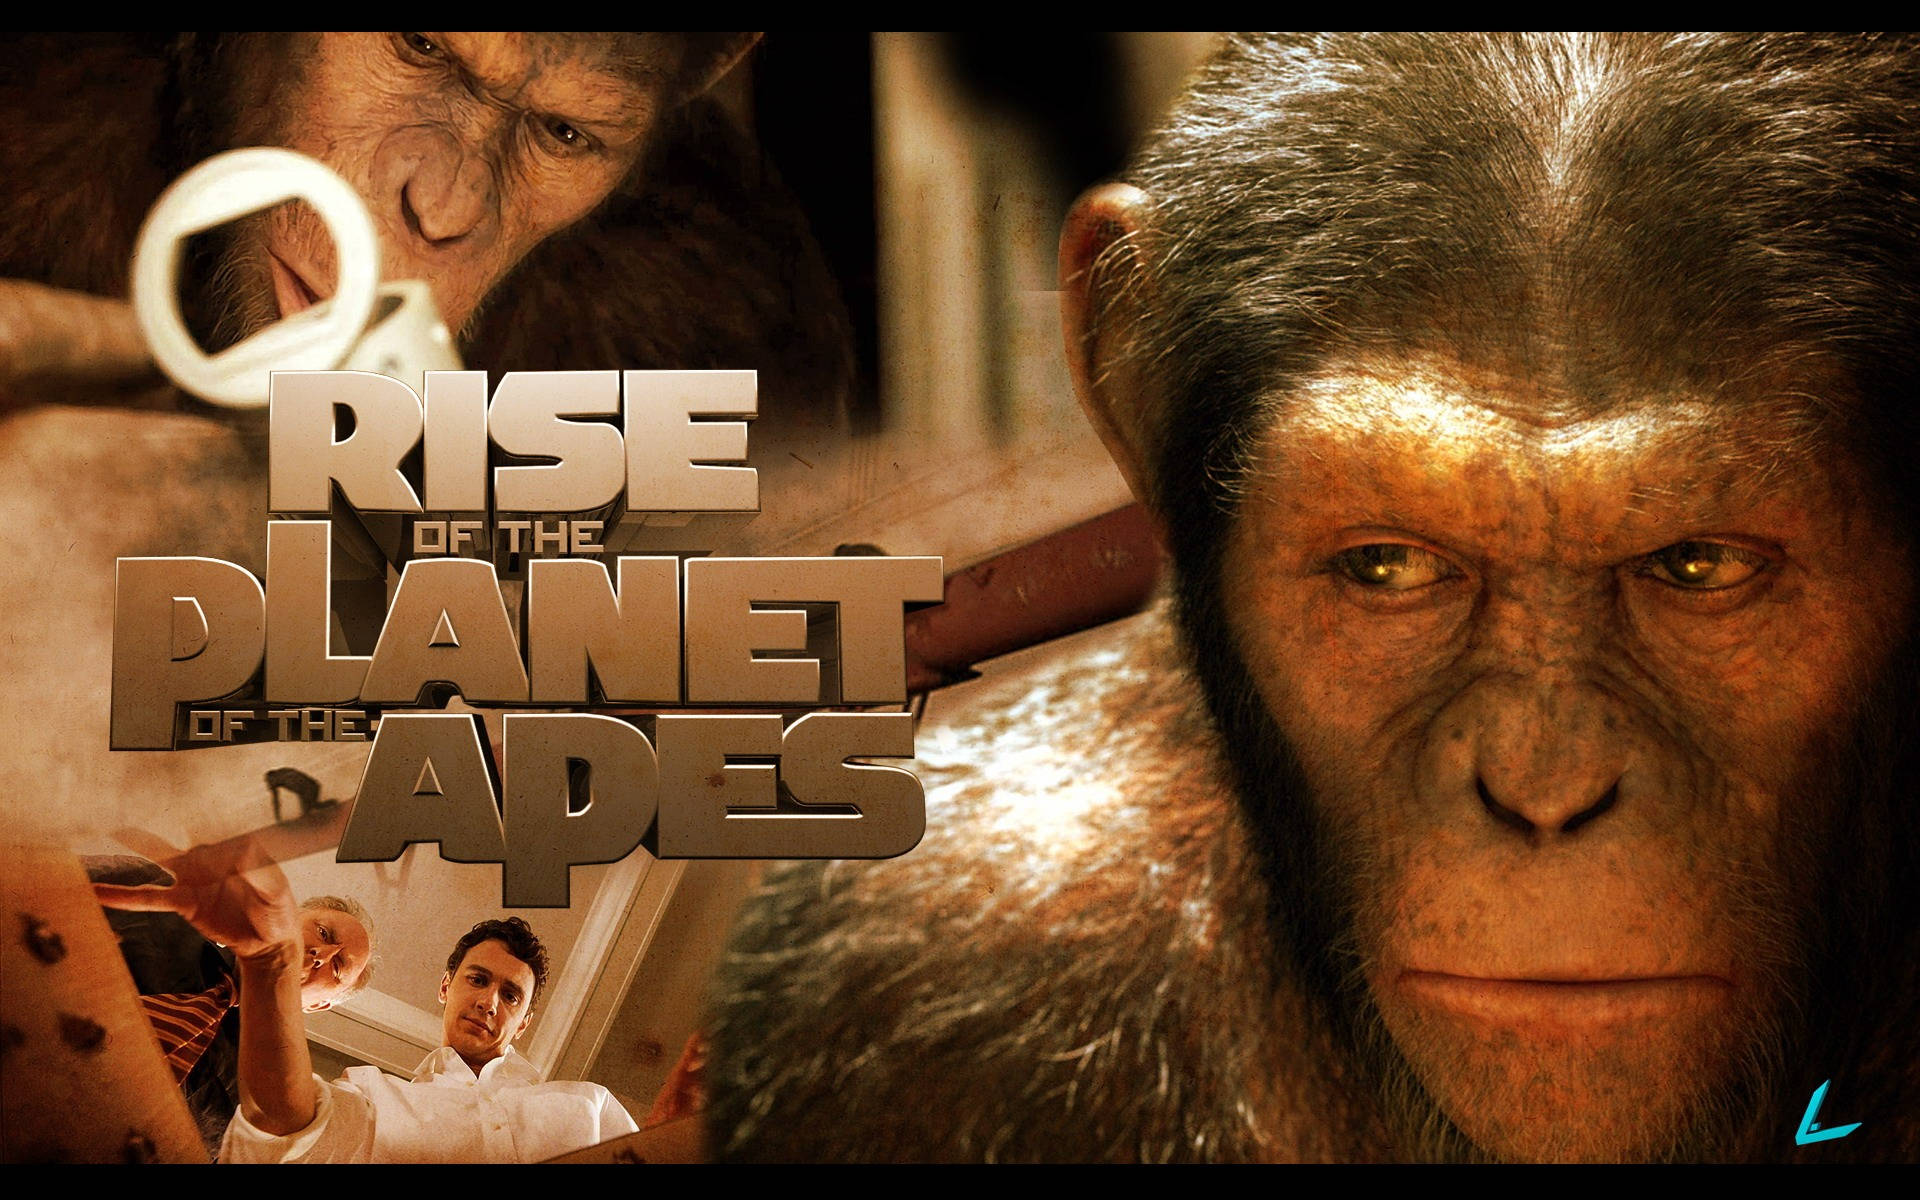 Stig af Planet of Apes Blockbuster-filmen Tema Tapet Wallpaper